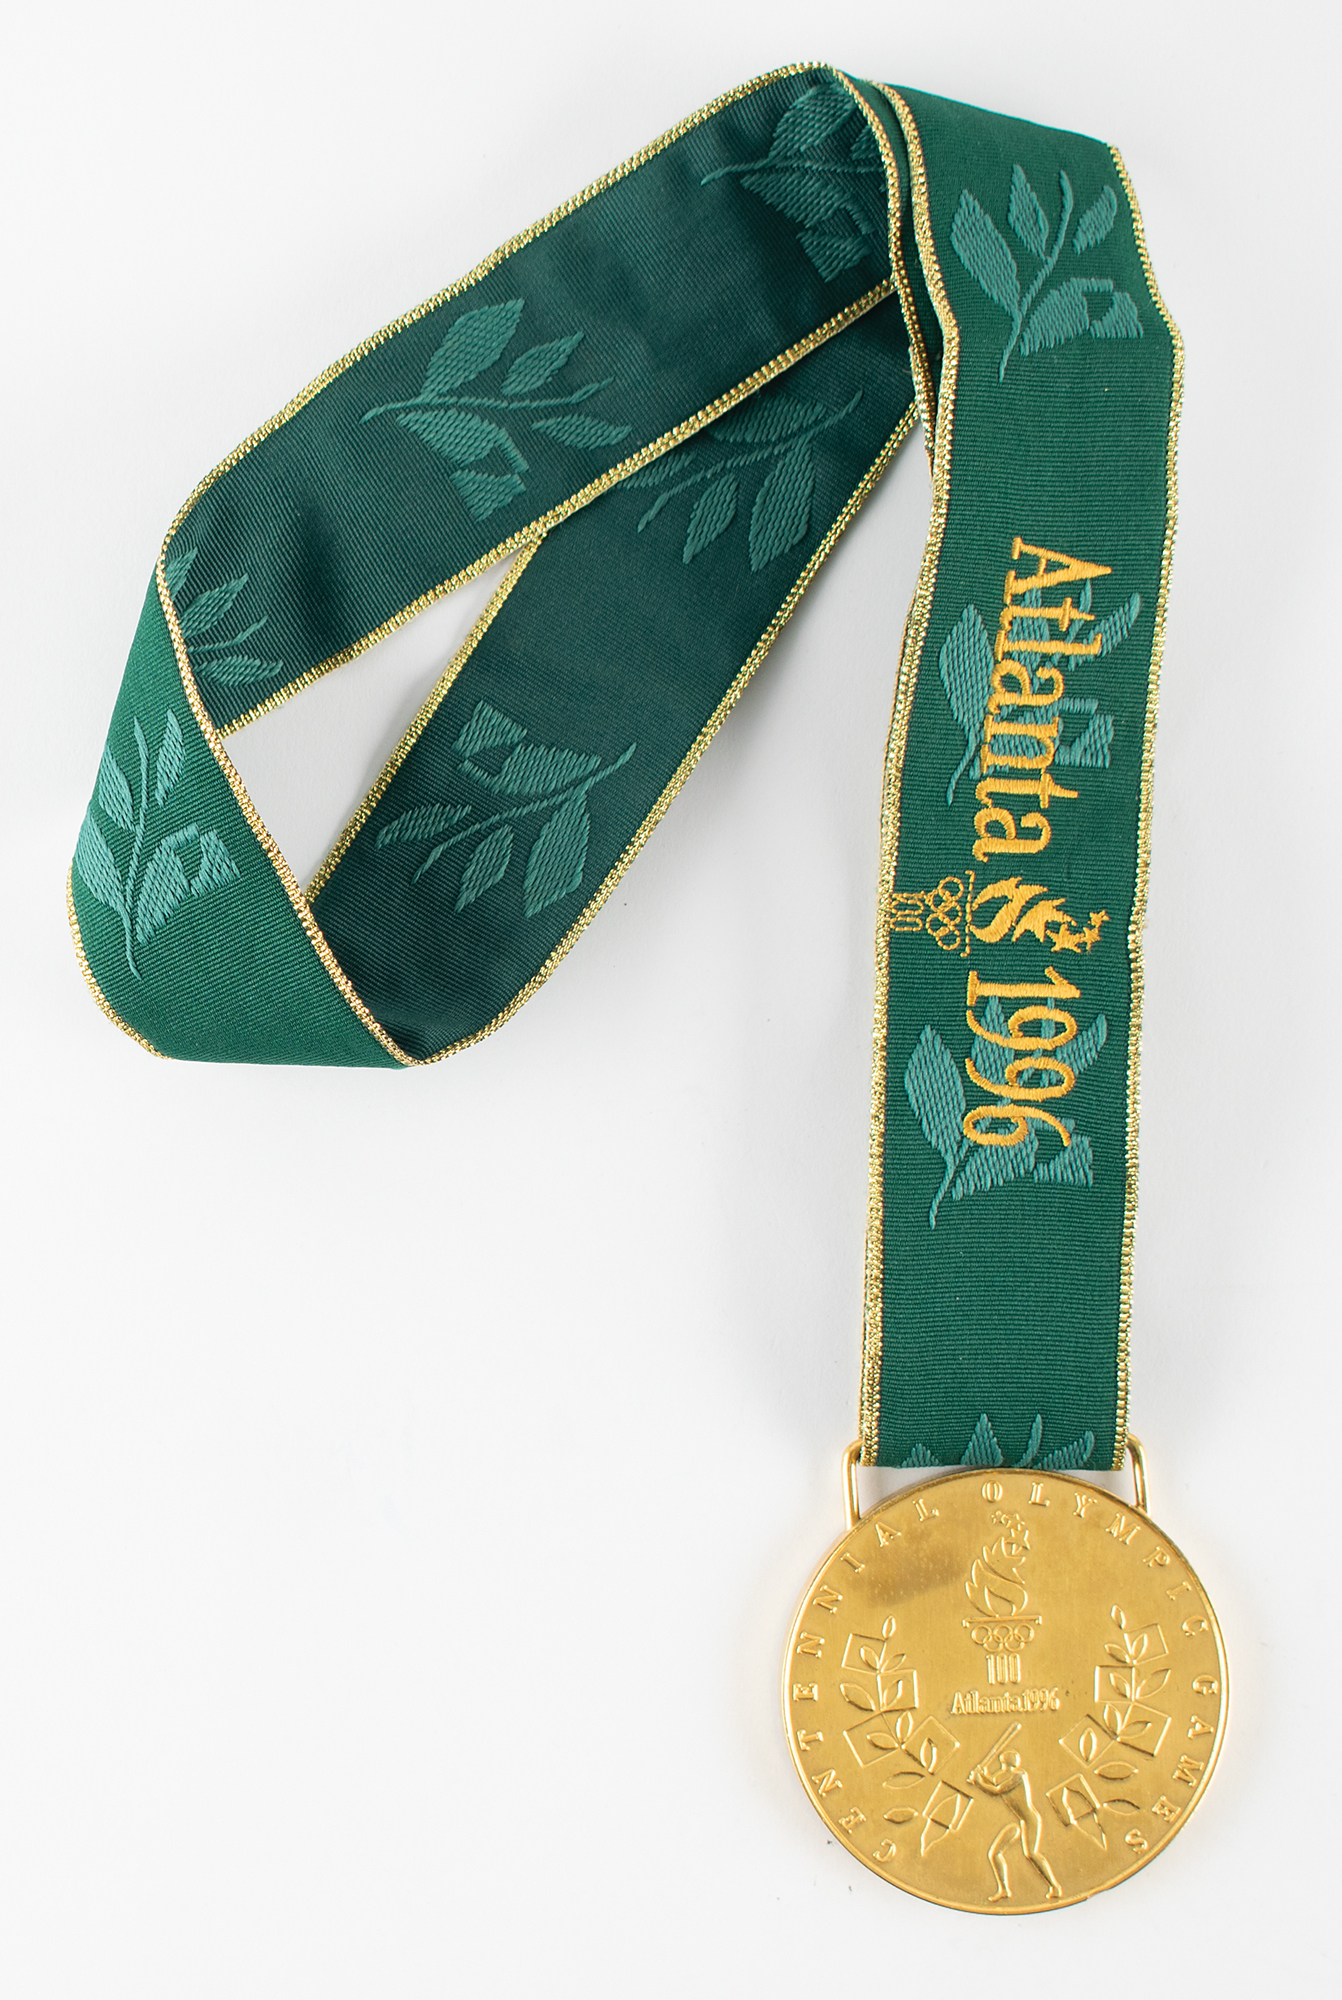 Lot #6152 Atlanta 1996 Summer Olympics Gold Winner's Medal